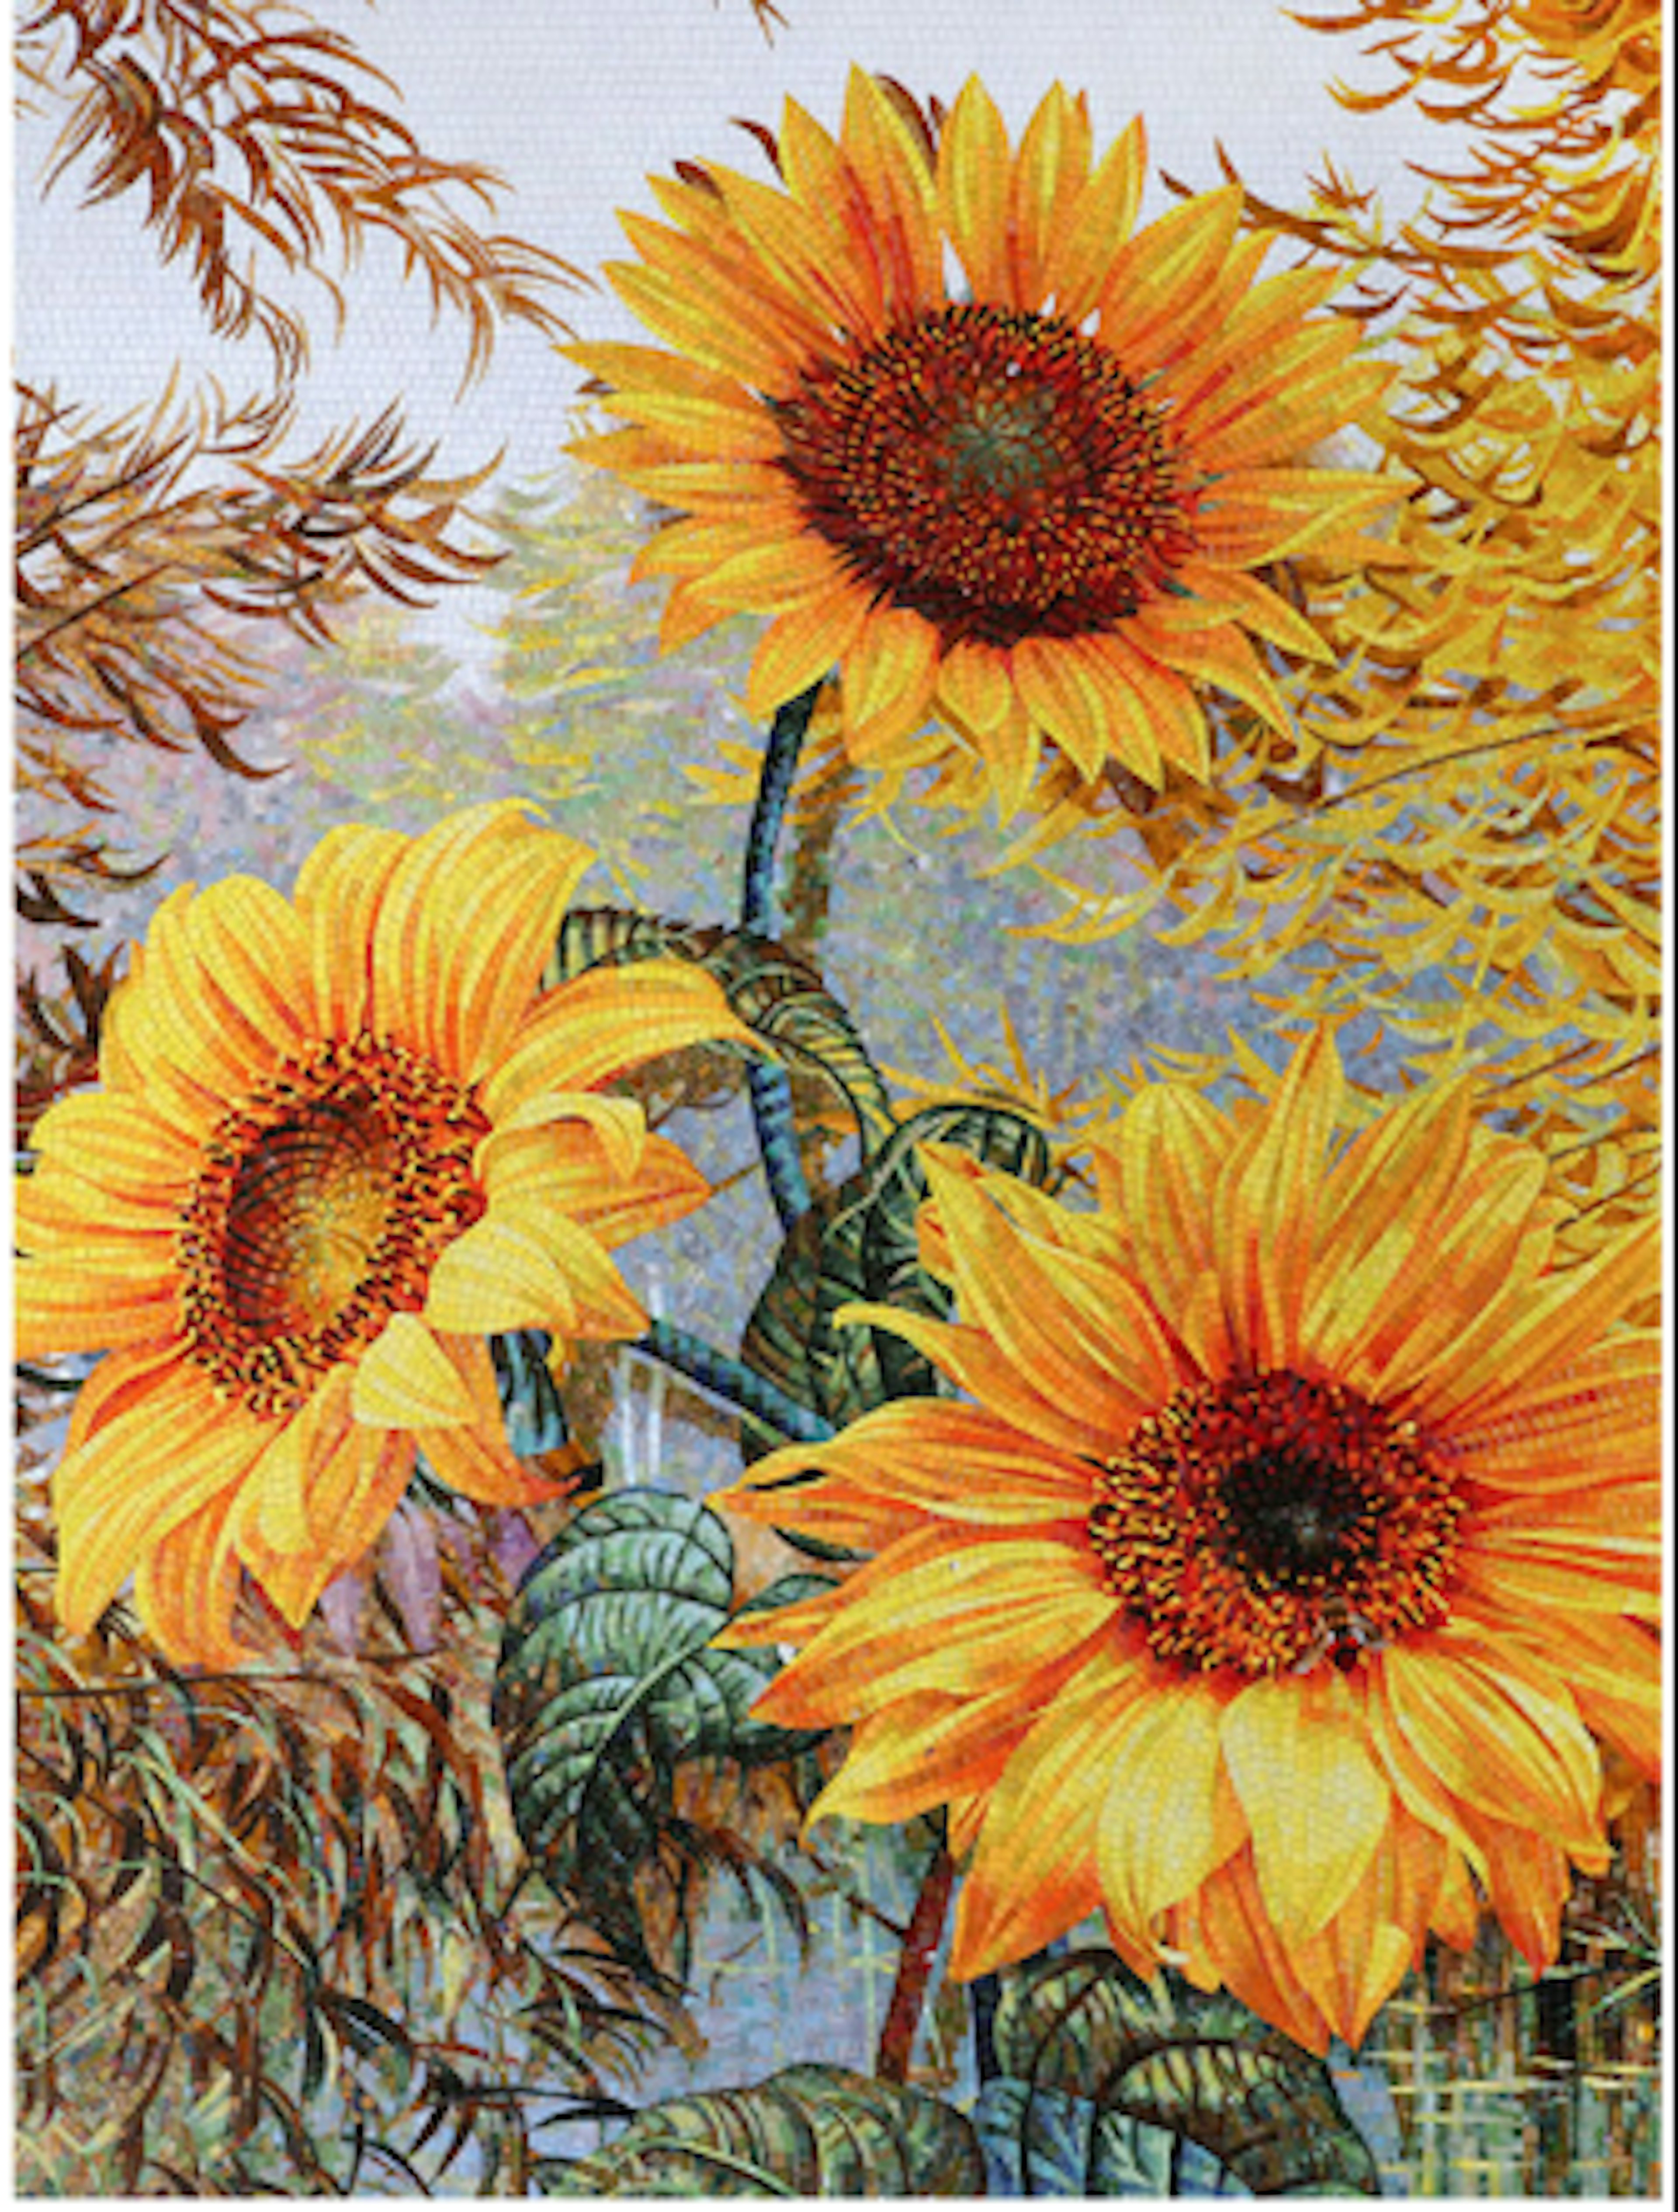 Sunflower Glass Wall Art